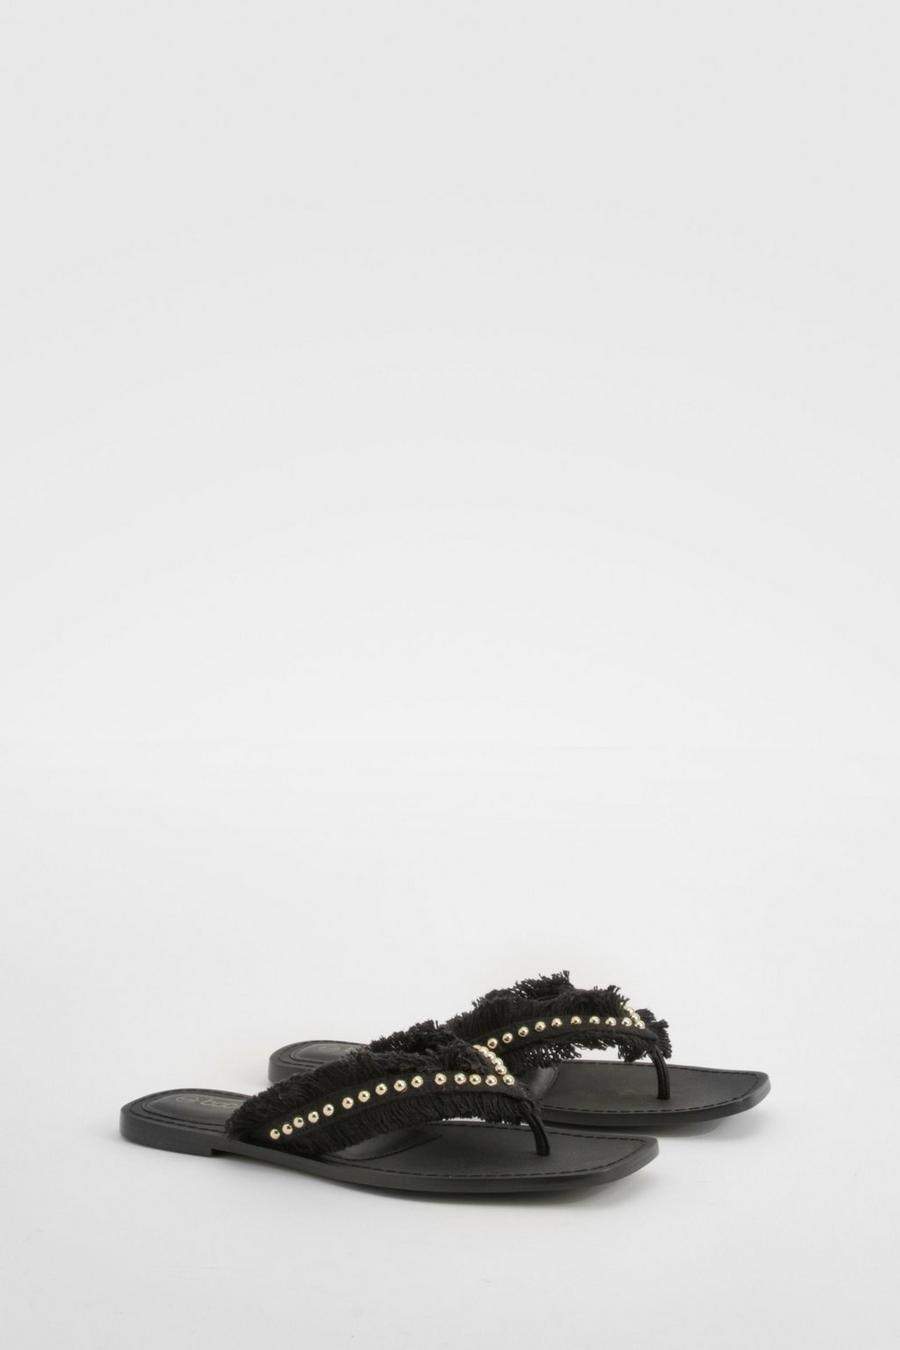 Black Embroidered Stud Flip Flop Sandals image number 1